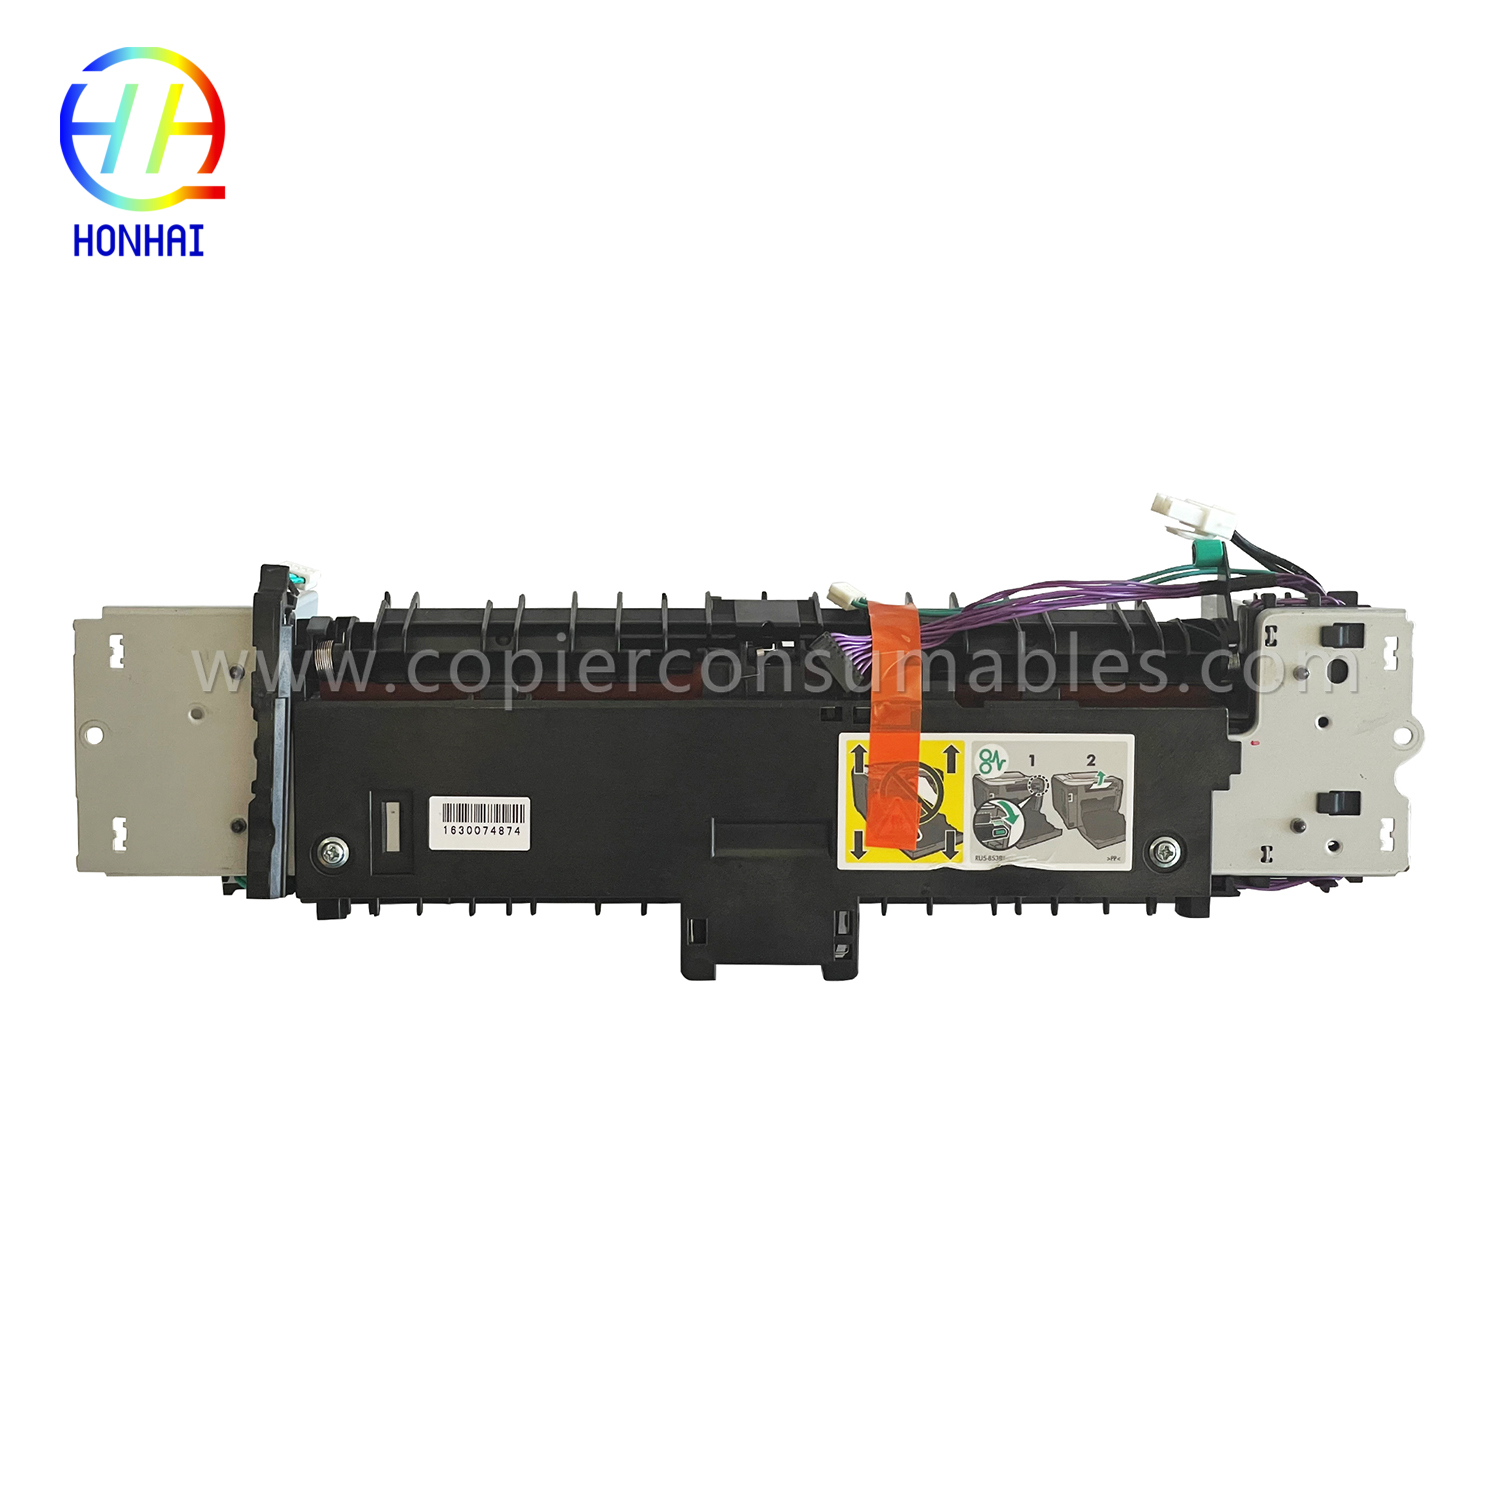 Fuser Unit para sa HP Laserjet PRO 400 Color Mfp M475dn M475dw (RM2-5478-000)